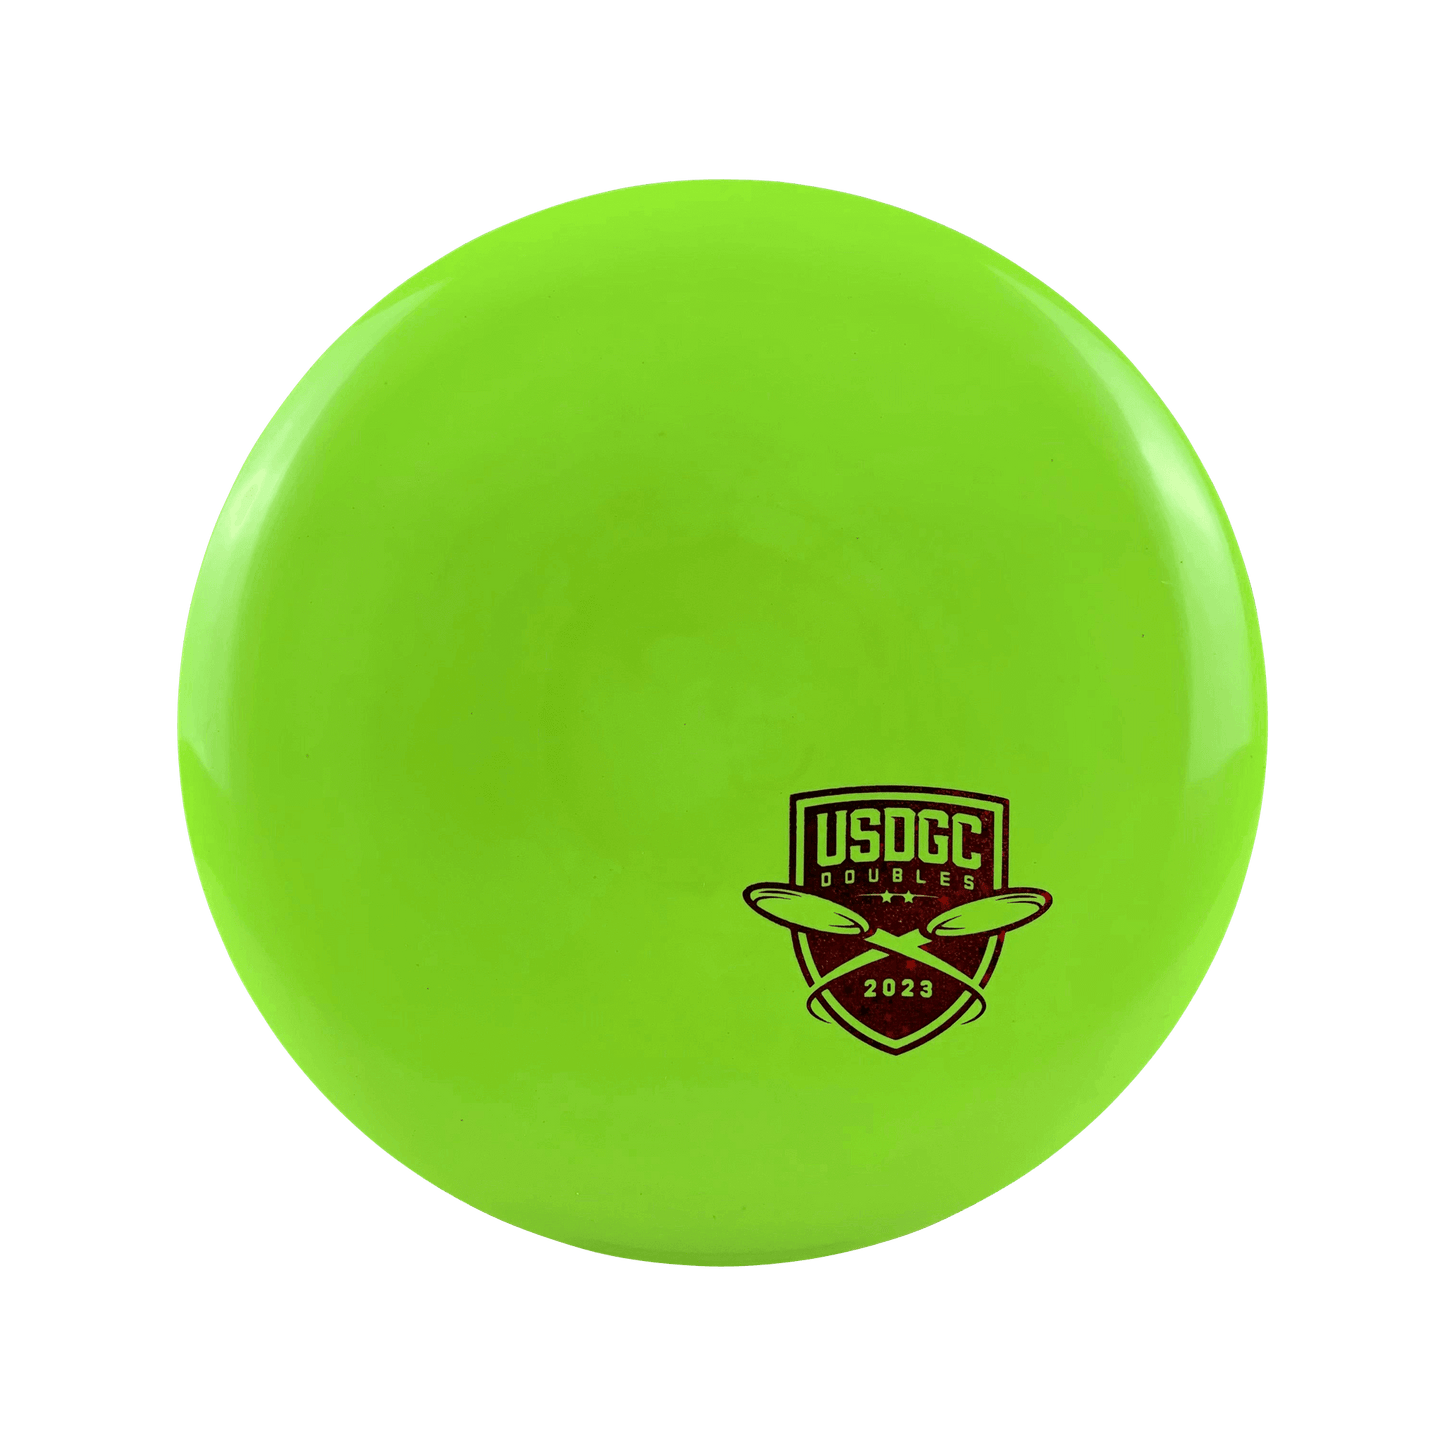 Star Roadrunner - USDGC Doubles Disc Innova bright green 166 